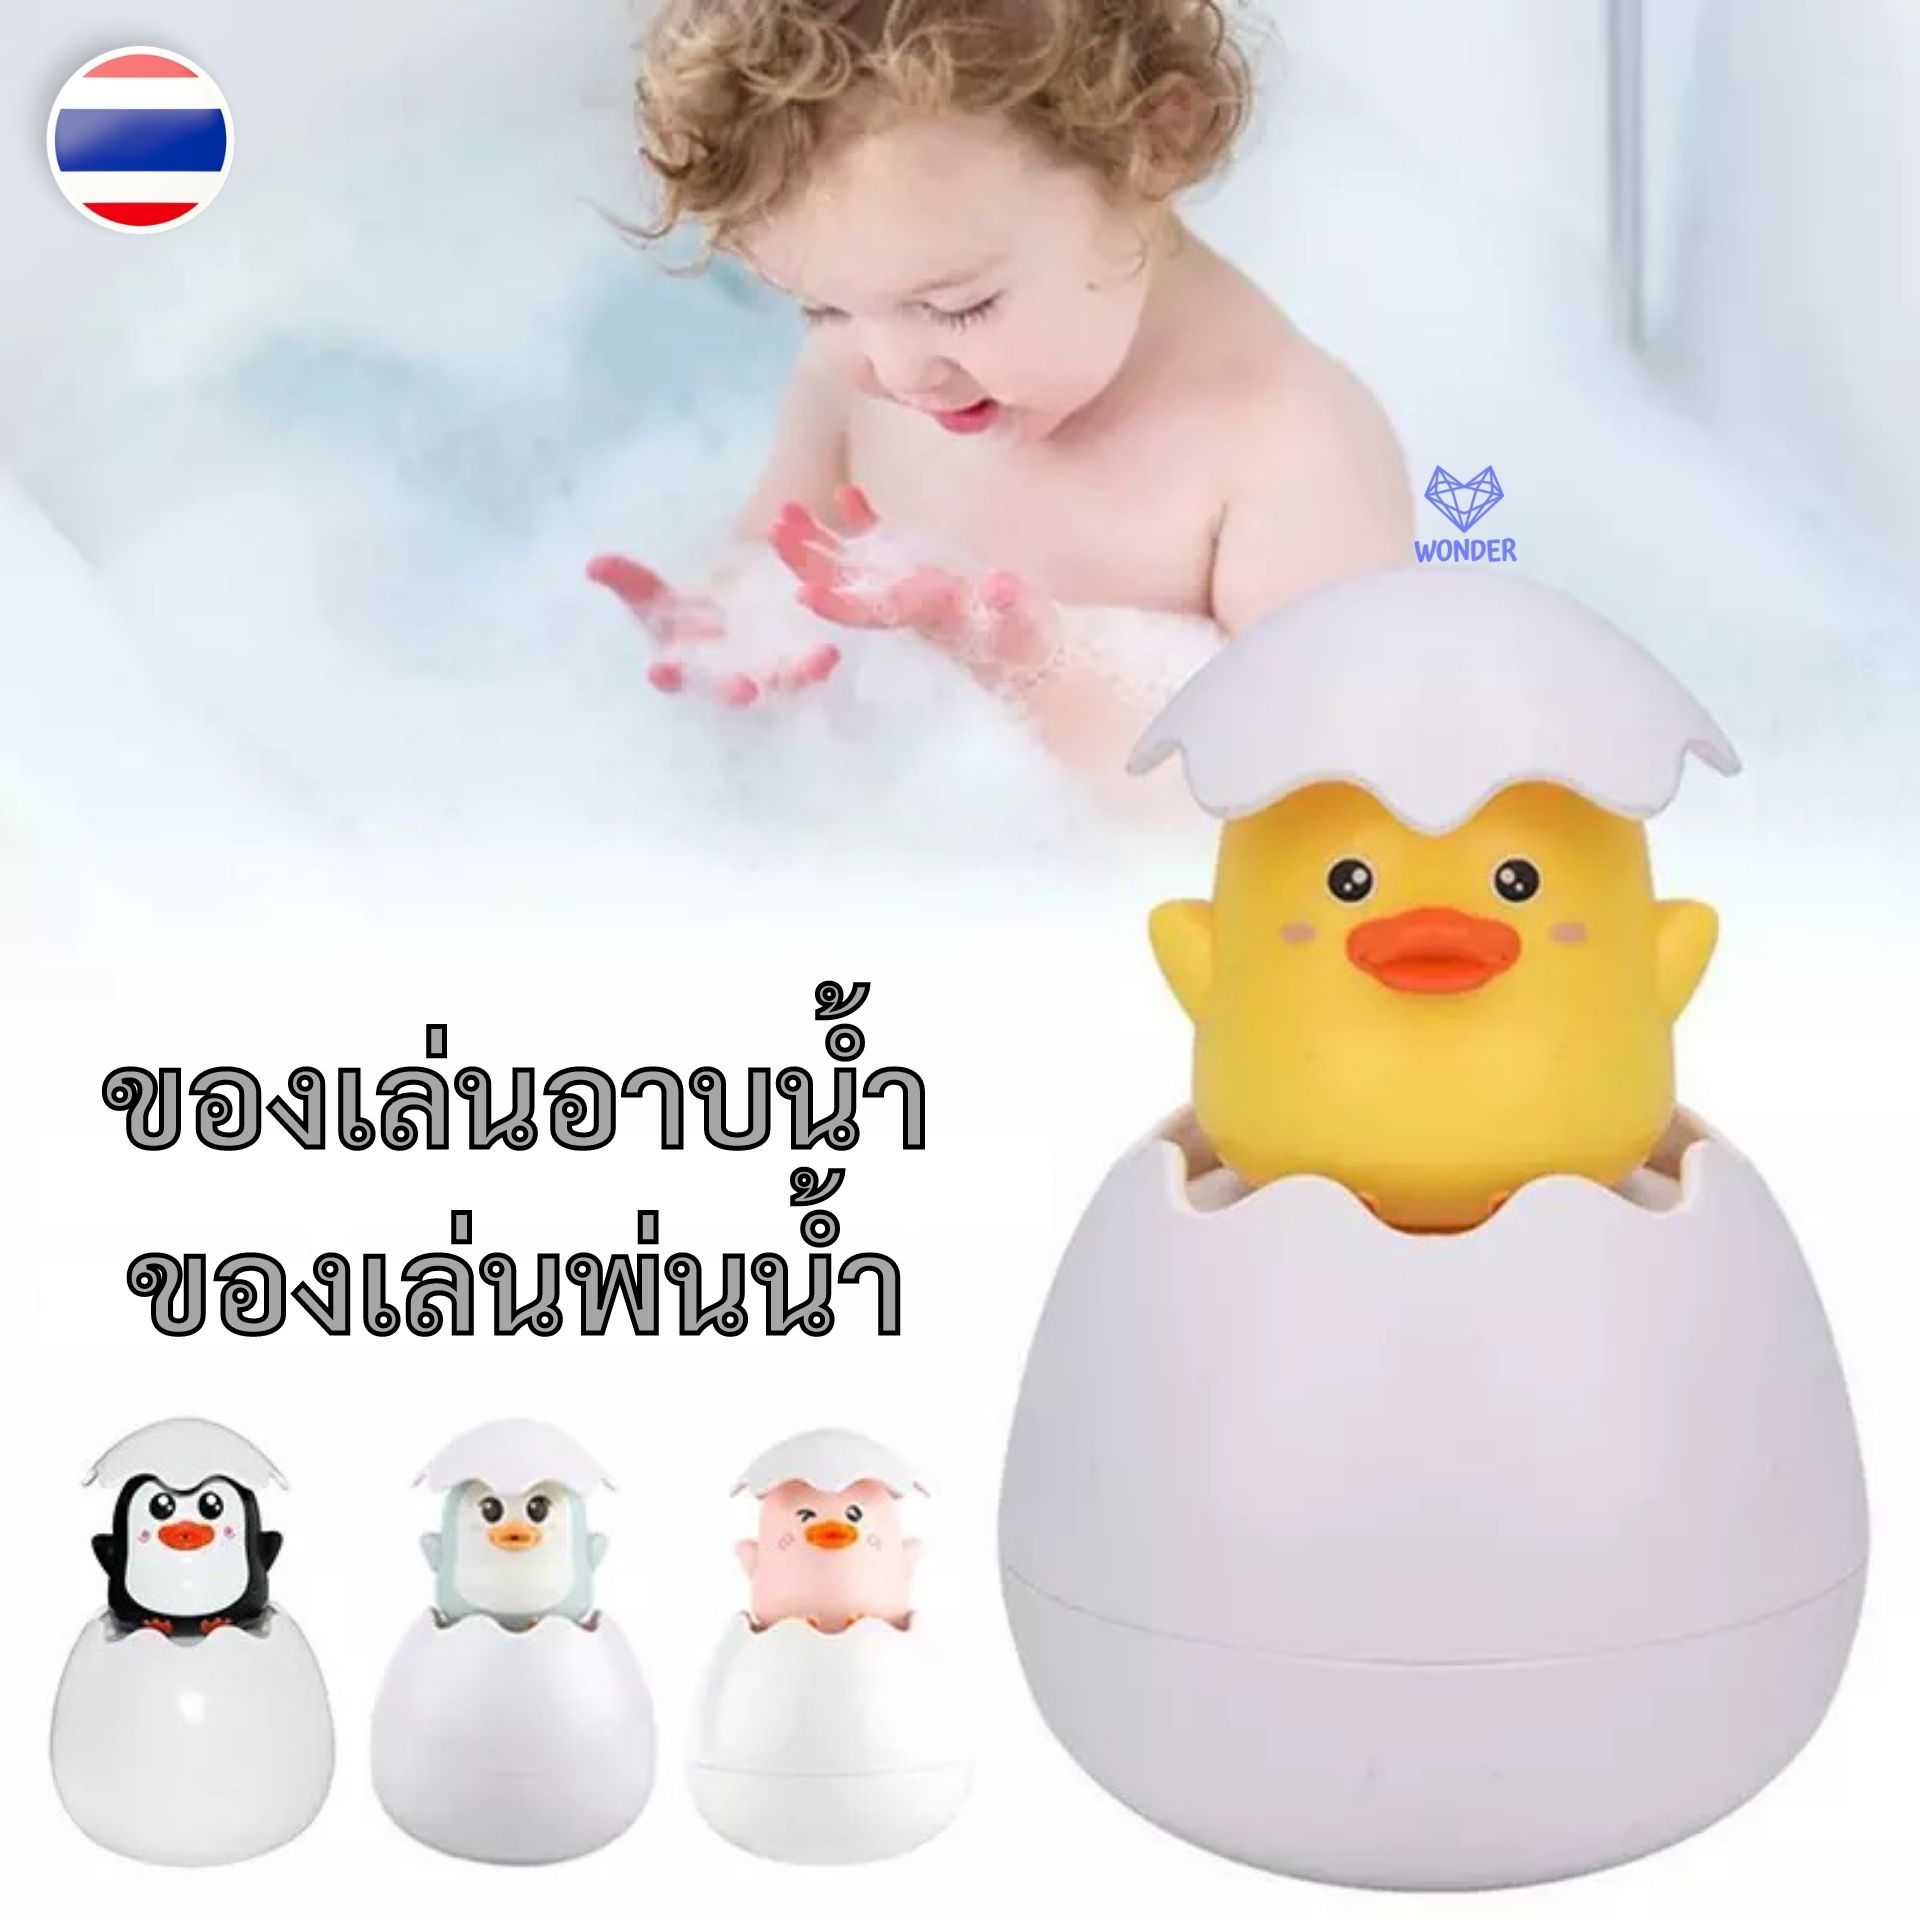 ? ของเล่นพ่นน้ำ Bath Toys ของเล่นอาบน้ำ ของเล่นในห้องน้ำ ของเล่นอาบน้ำเด็ก ของเล่นเด็กอาบน้ำ ของเล่นเด็ก Baby Bathtub Toys W165